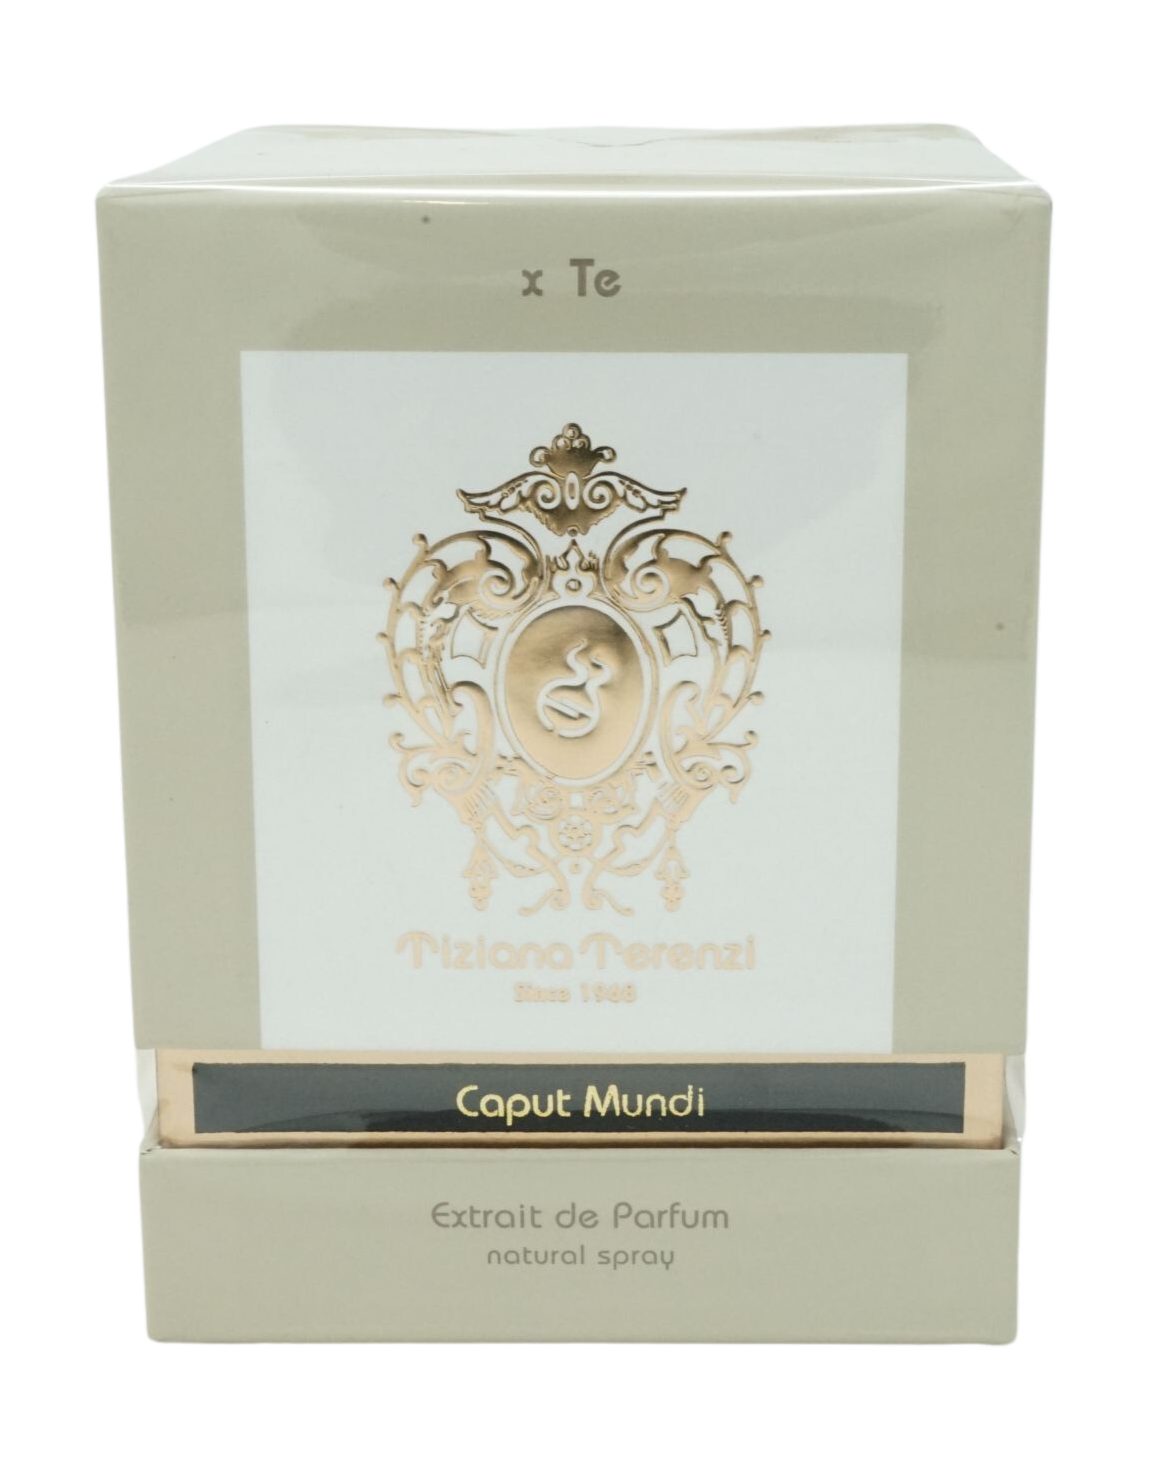 Terenzi Spray de Tiziana Extrait Parfum Tiziana Terenzi de 100ml Mundi Parfum Eau Caput